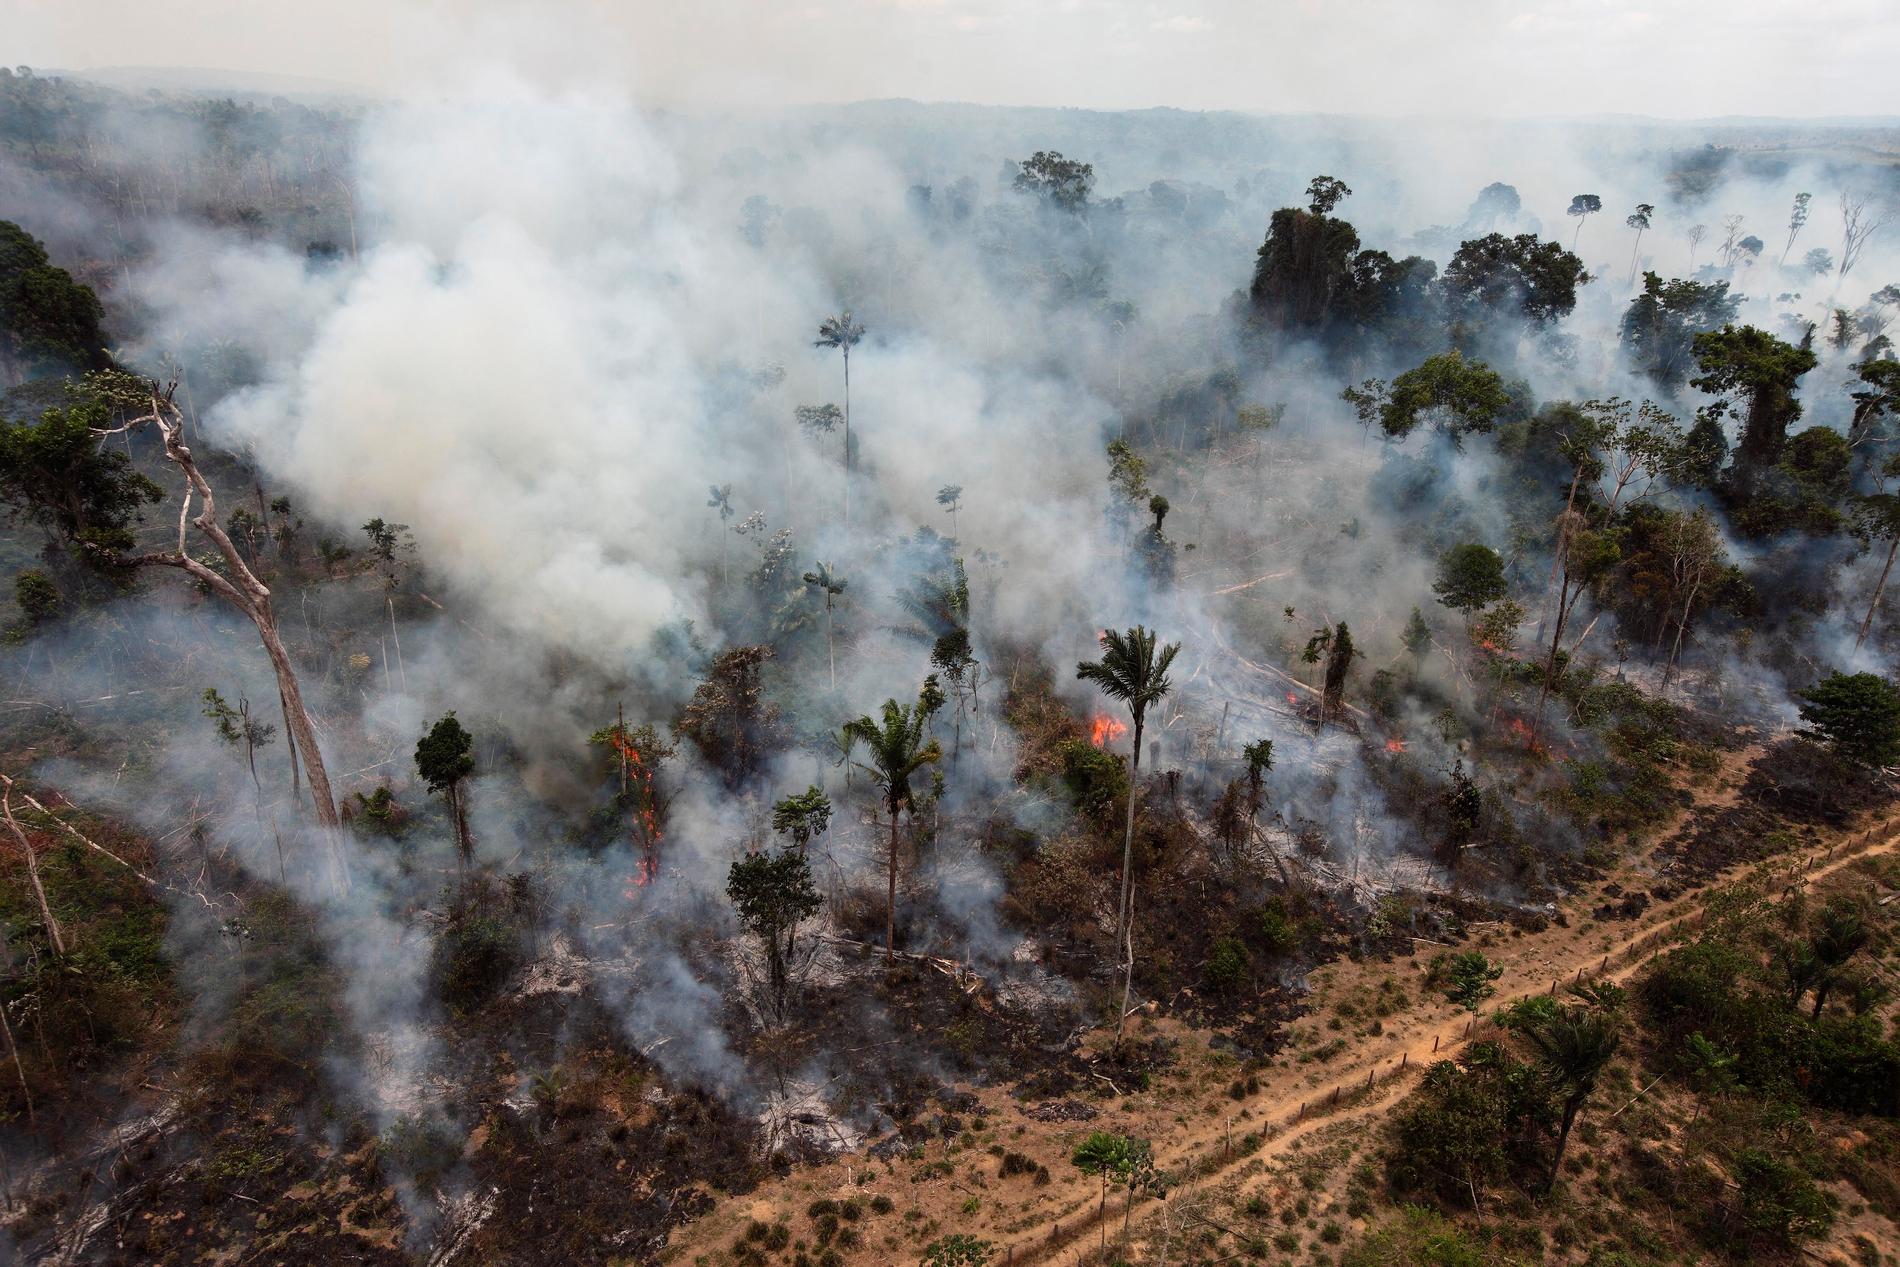 Antalet skogsbränder i Amazonas har ökat rejält i år. Arkivbild från en annan brand i regnskogsområdet, tagen 2009.